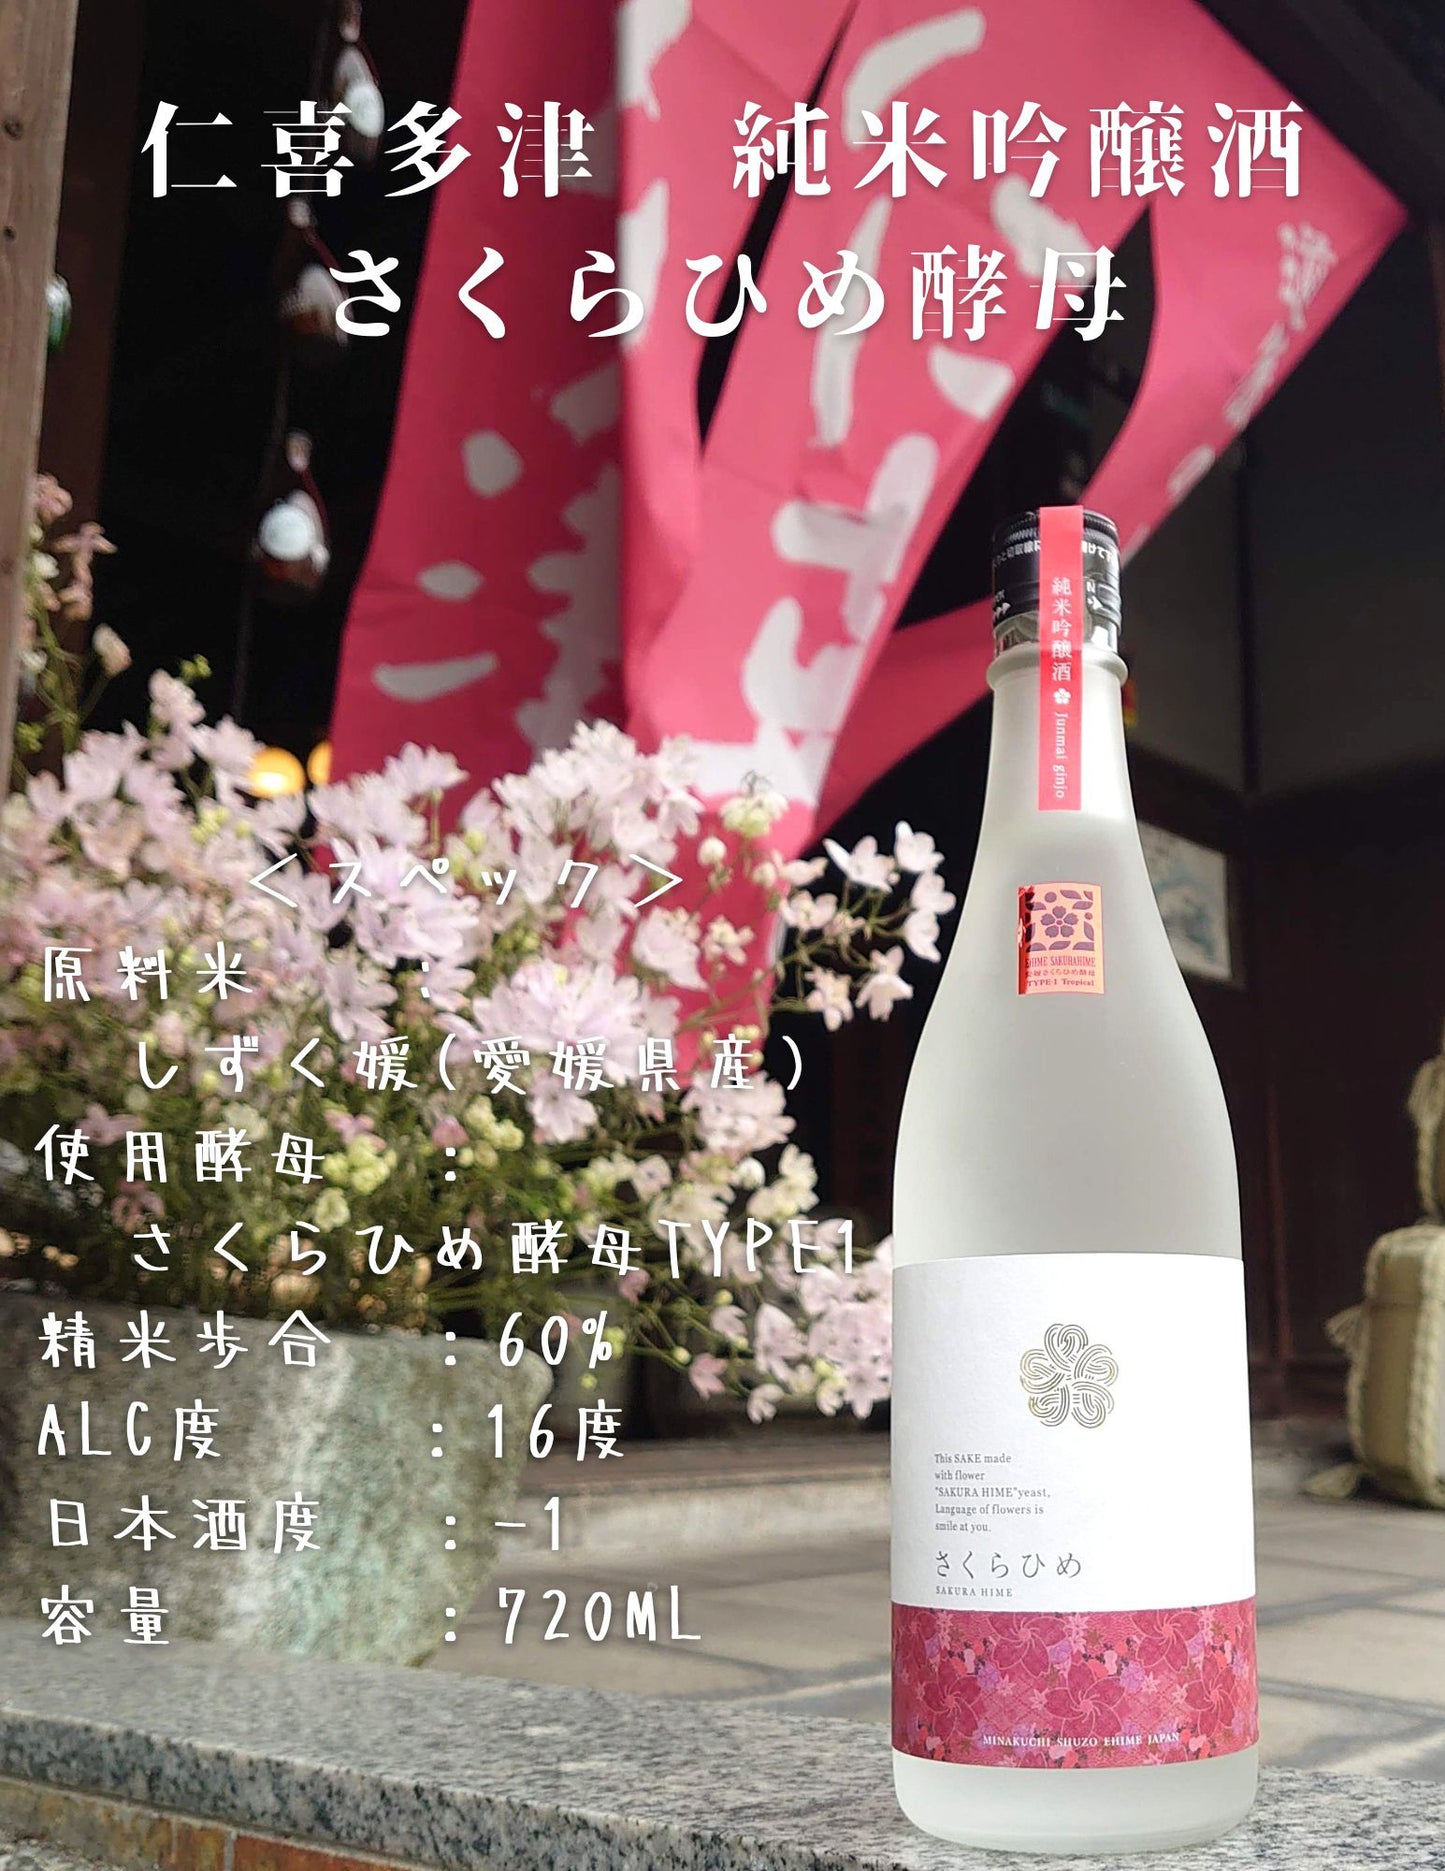 Nikitazu Junmai Ginjo Sake Sakurahime Yeast 720ml Minakuchi Sake Brewery Co., Ltd.